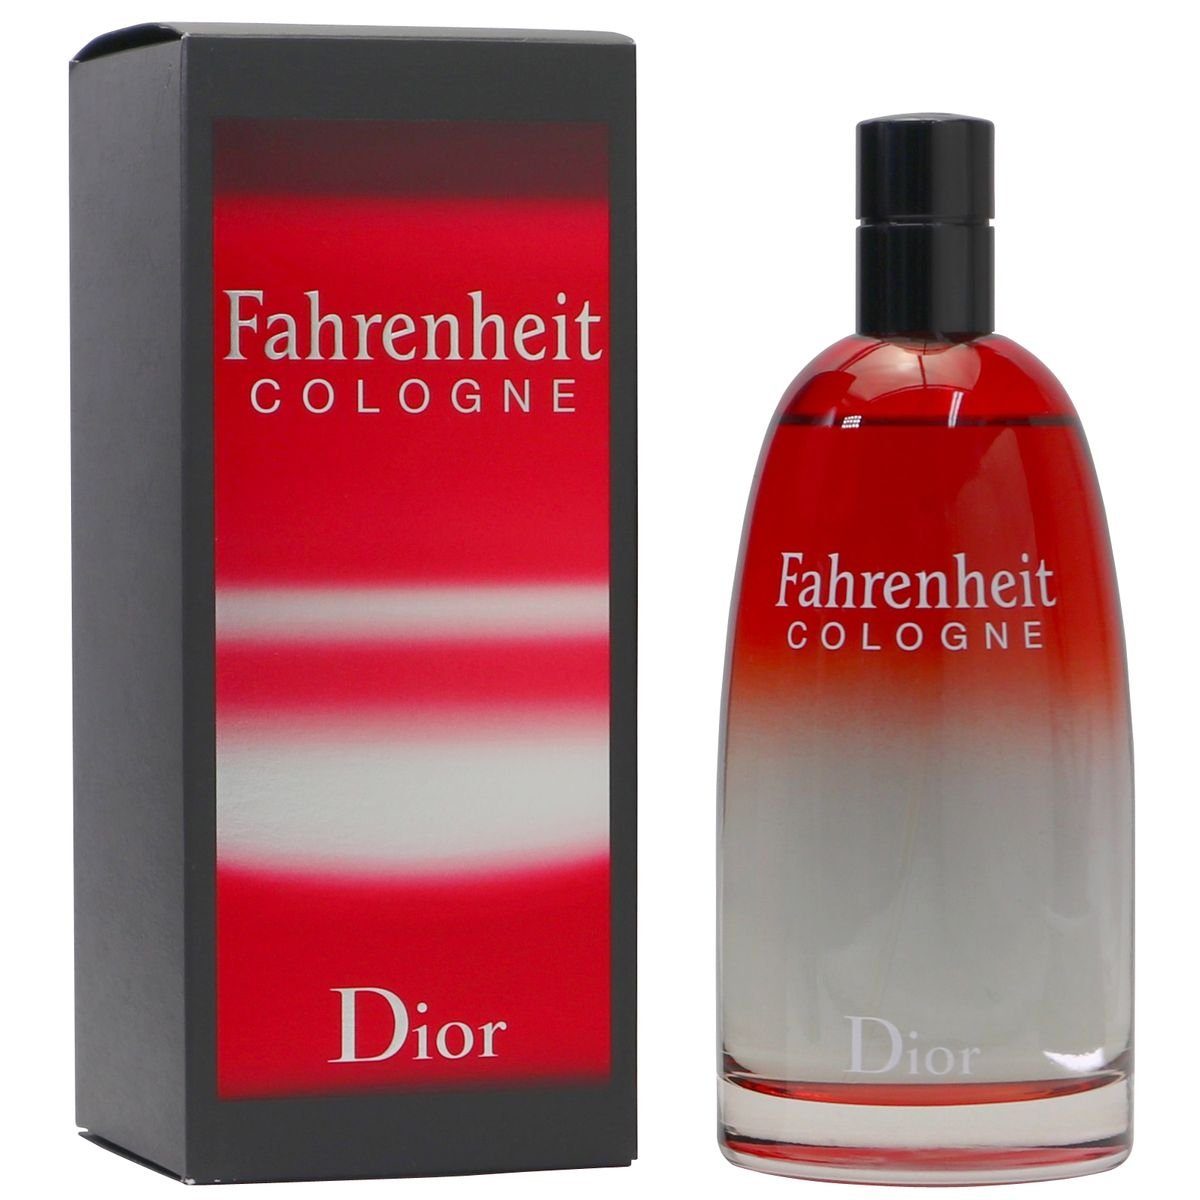 Fahrenheit ml Cologne Cologne Dior Spray 200 Christian Eau Dior de